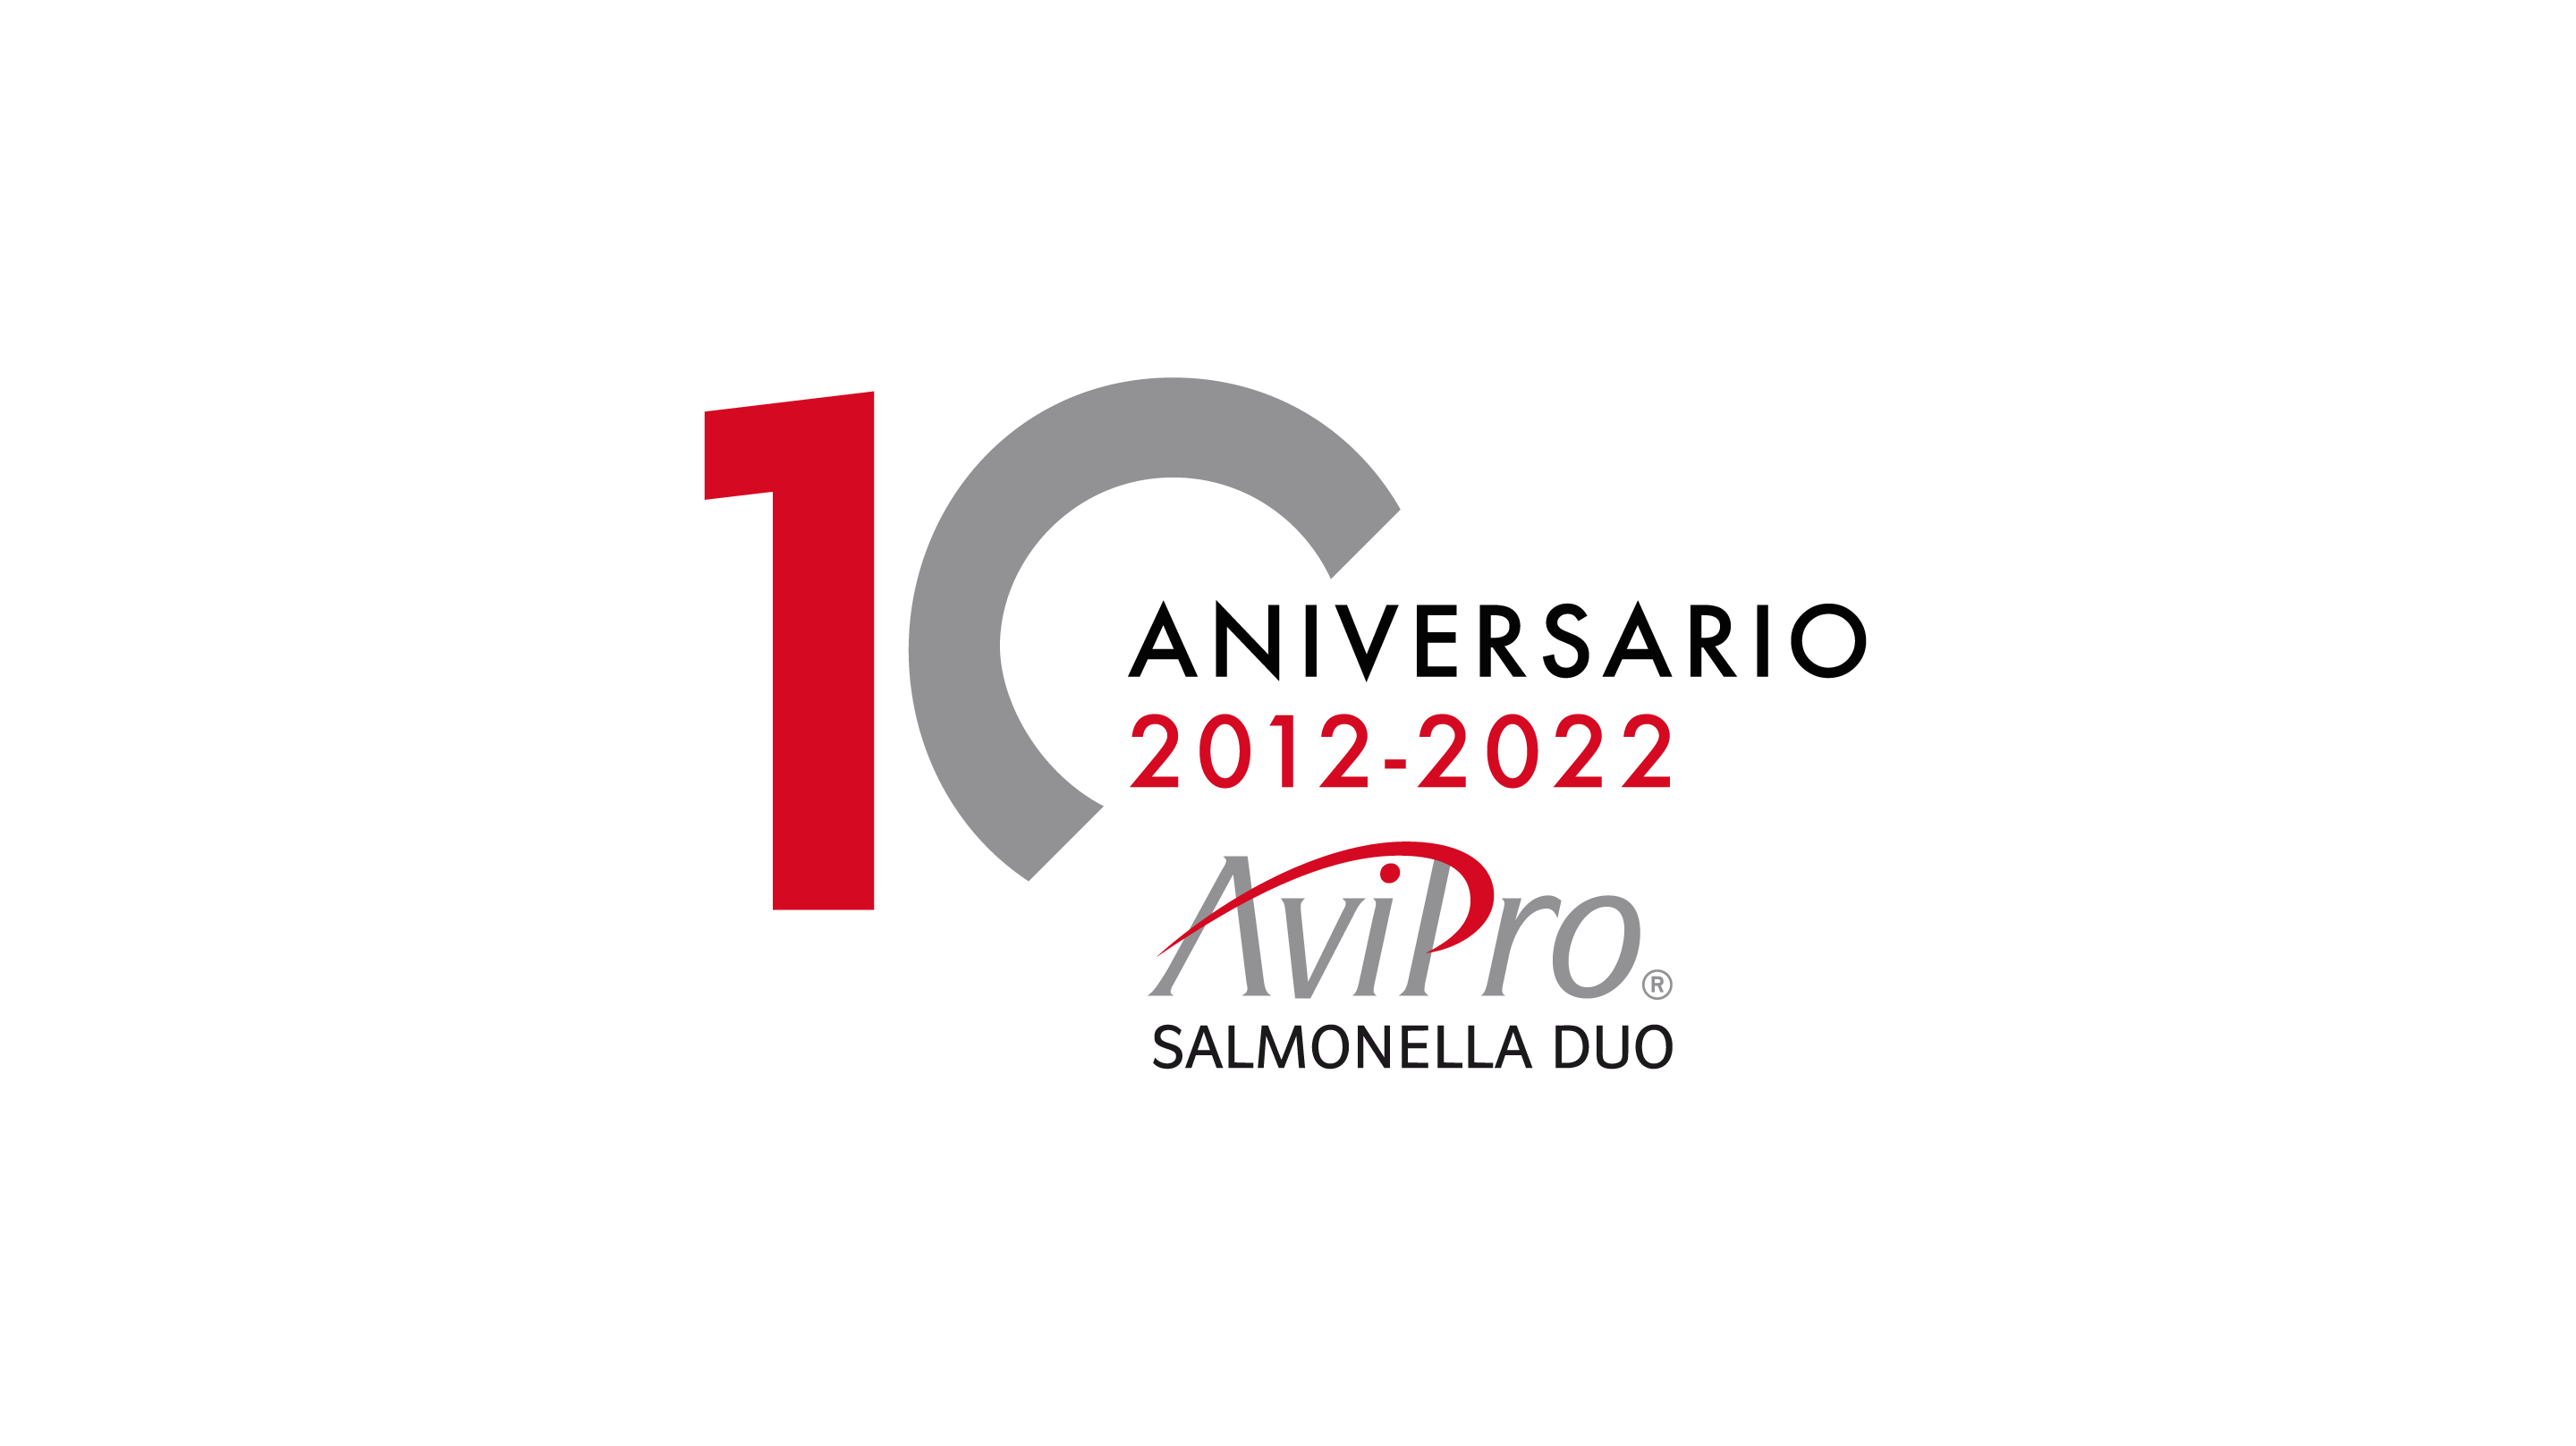 10th Anniversary of ELANCO's AviPro Duo Vaccine